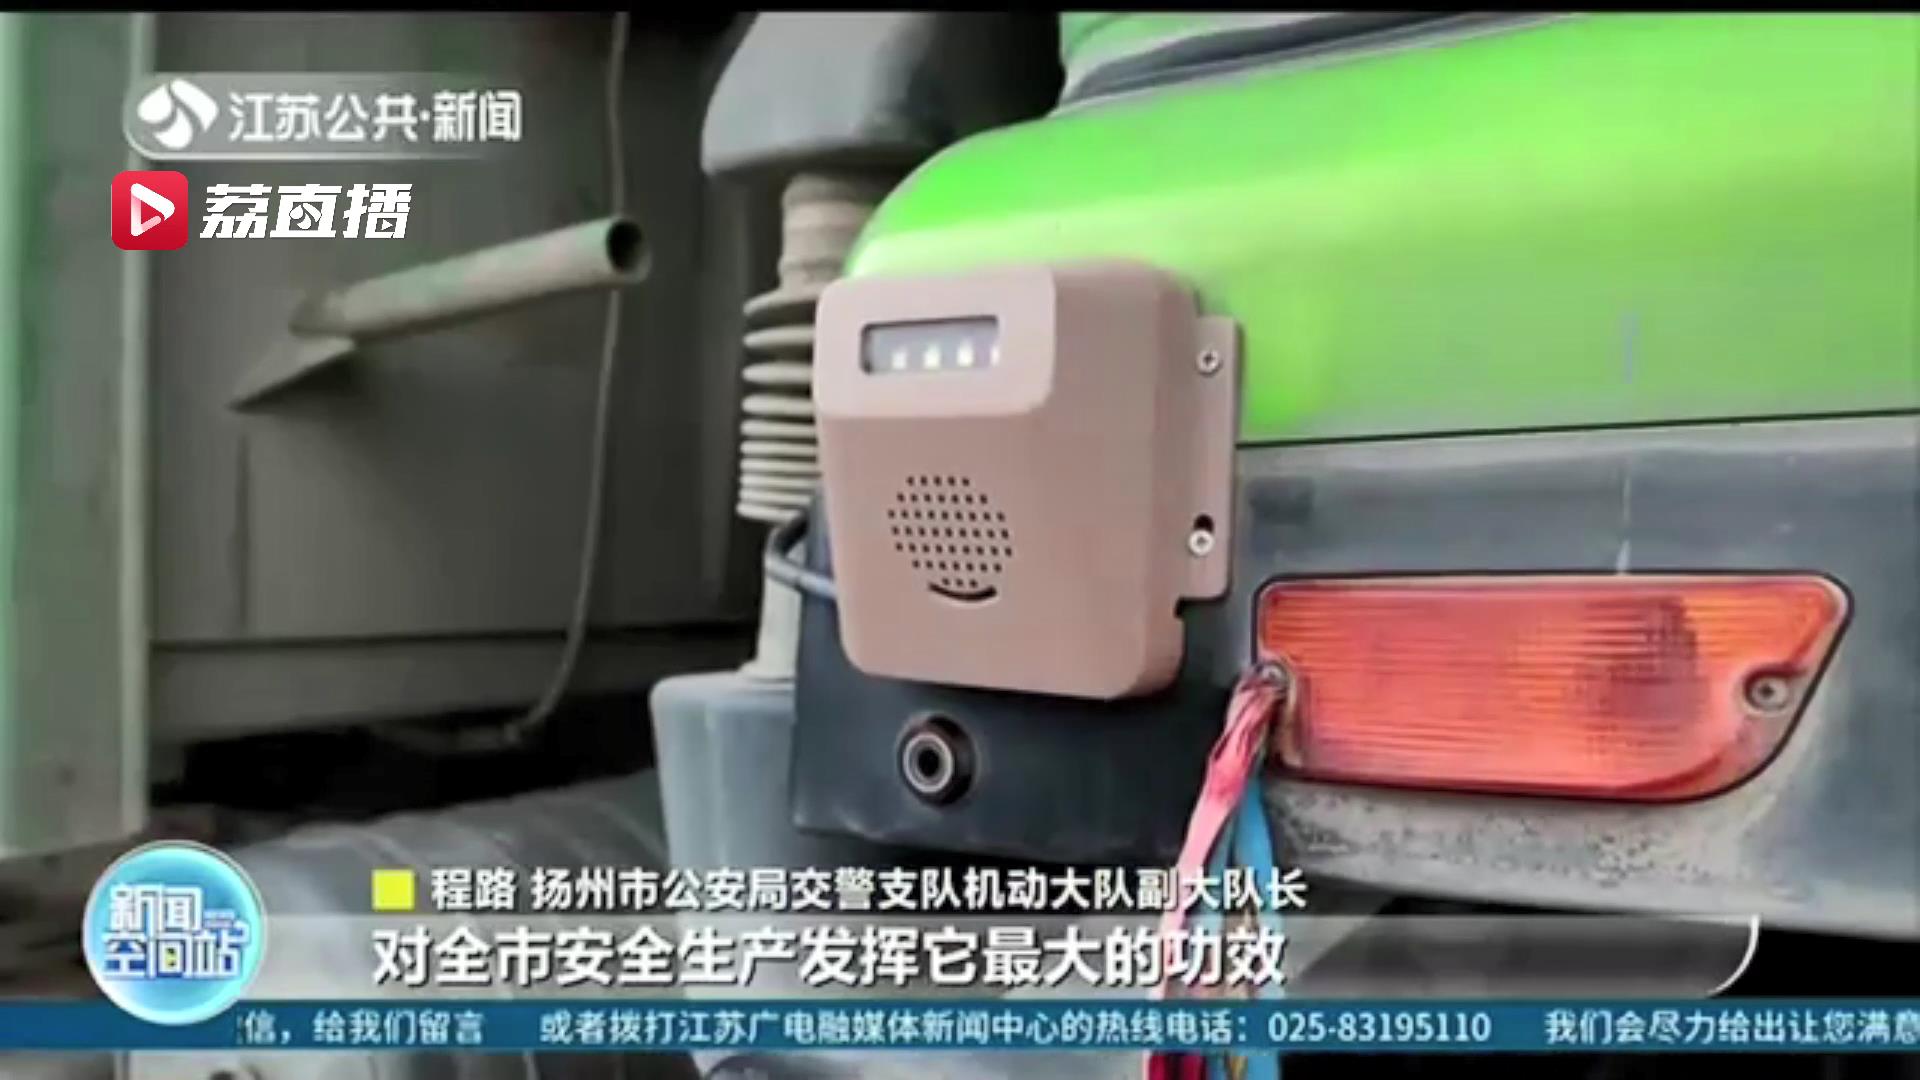 扬州给渣土车贴了个二维码 驾驶员“打哈欠”市民都能监控到